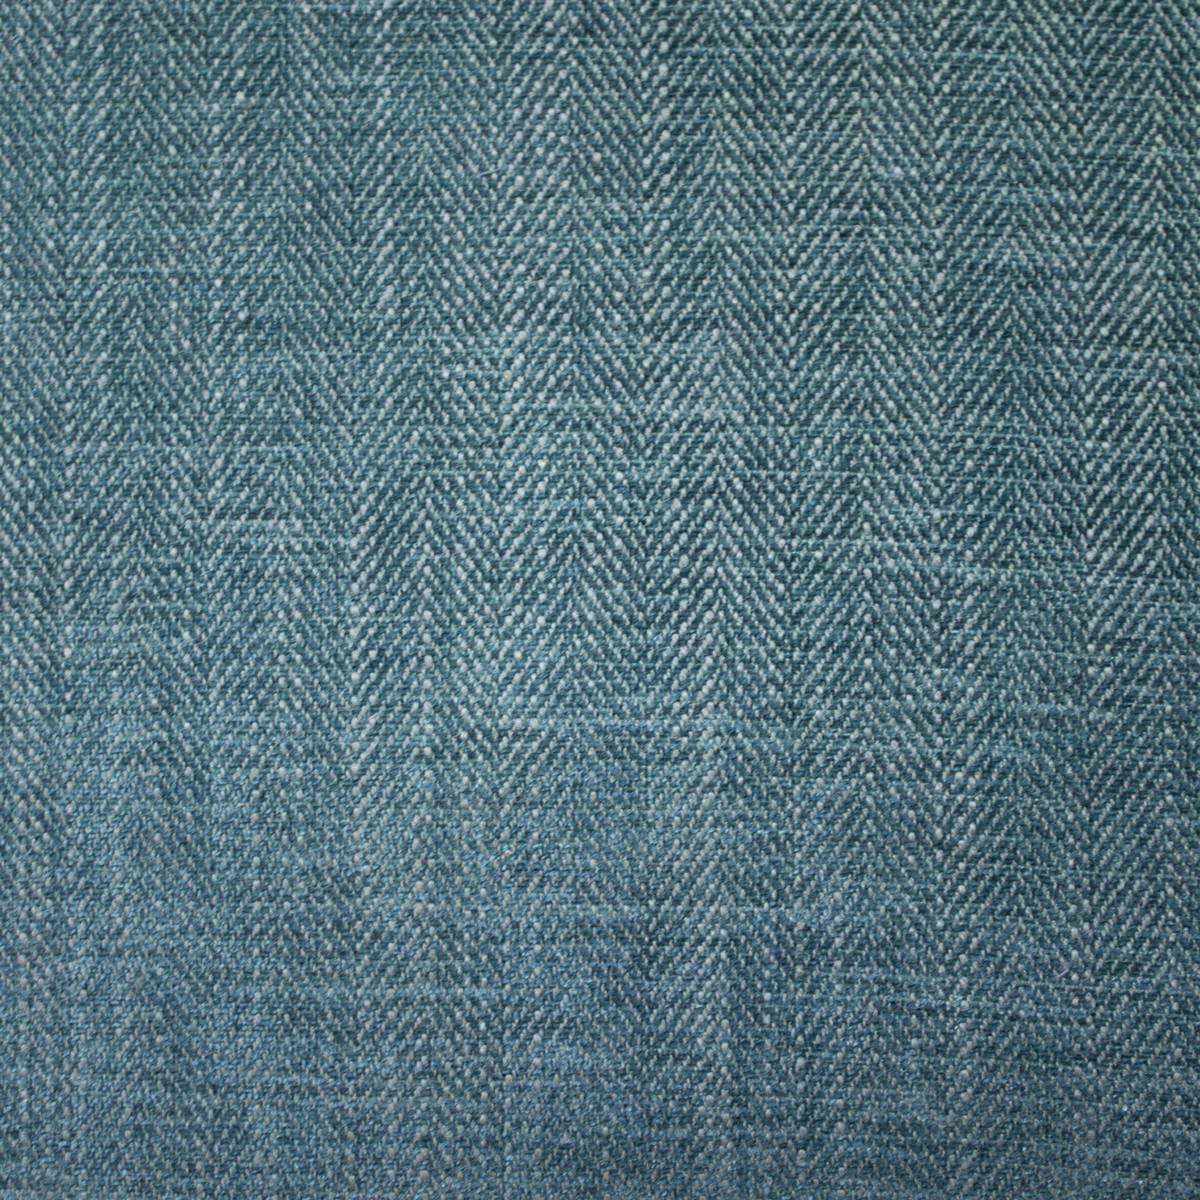 Morgan Teal Fabric by Ashley Wilde